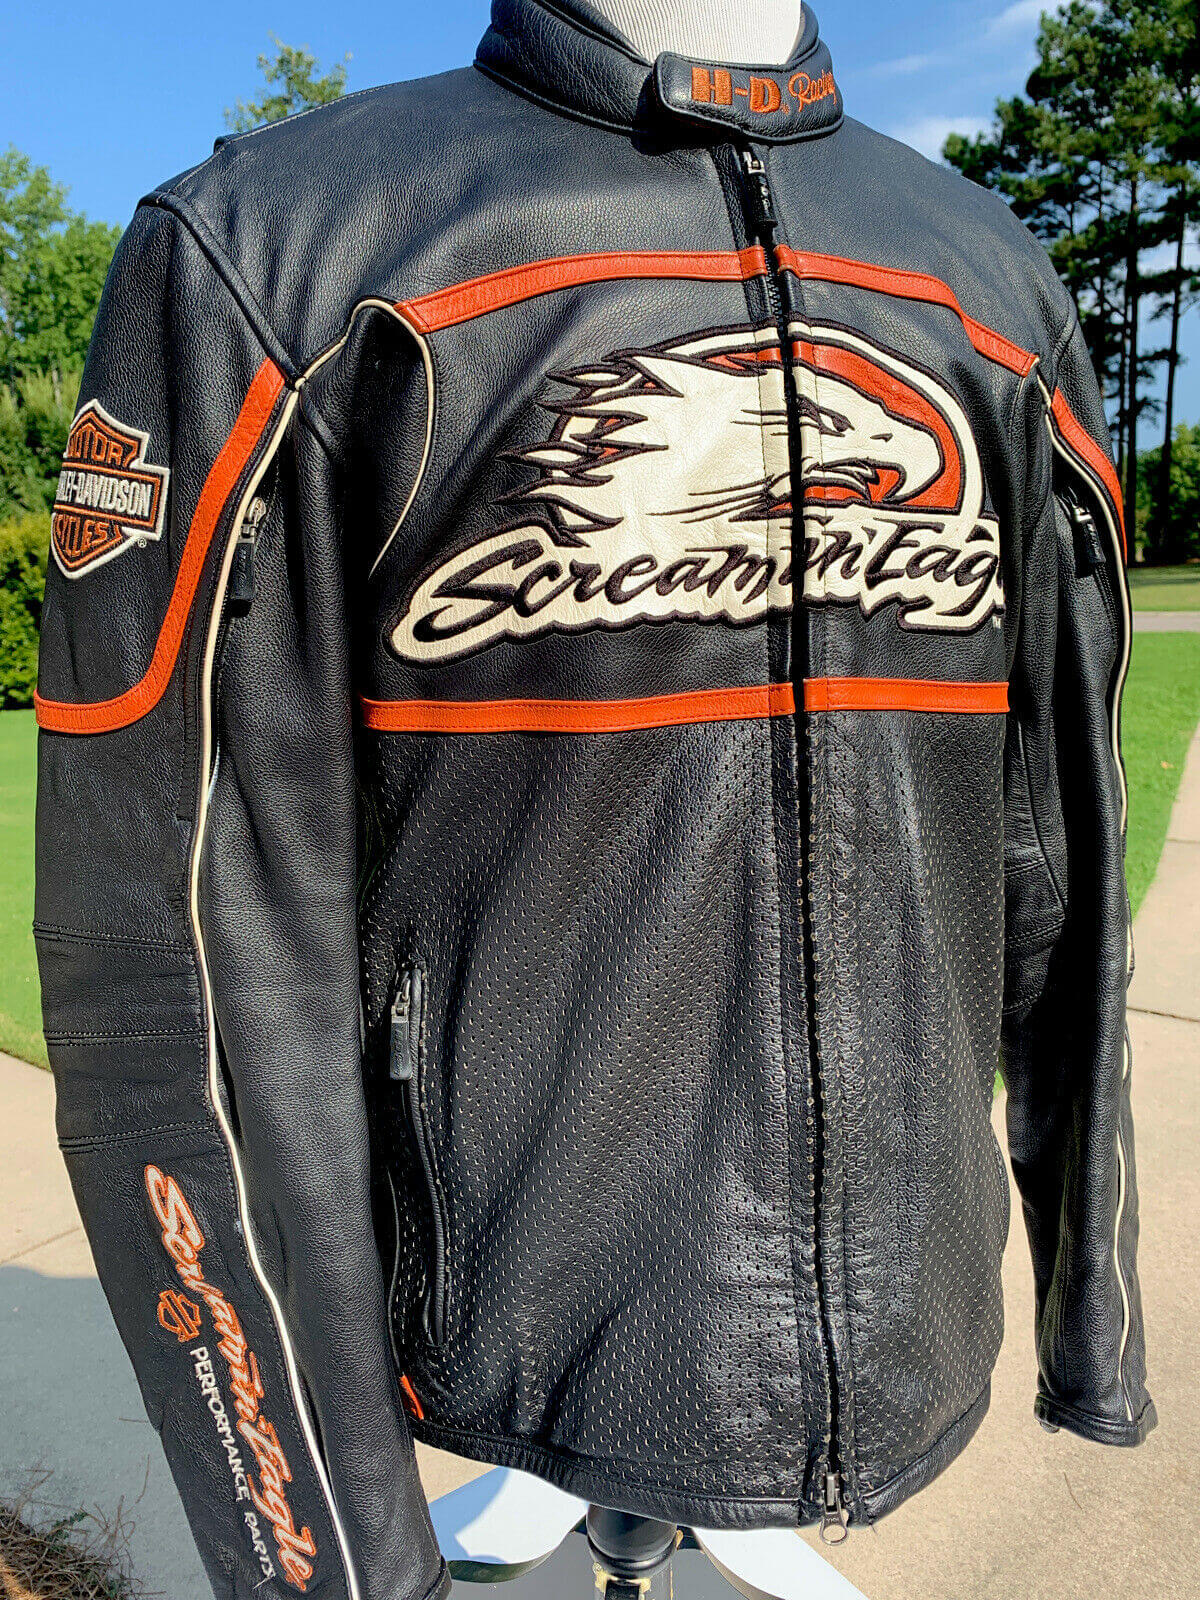 Harley Davidson Raceway Screamin Eagle Leather Jacket - Maker of Jacket